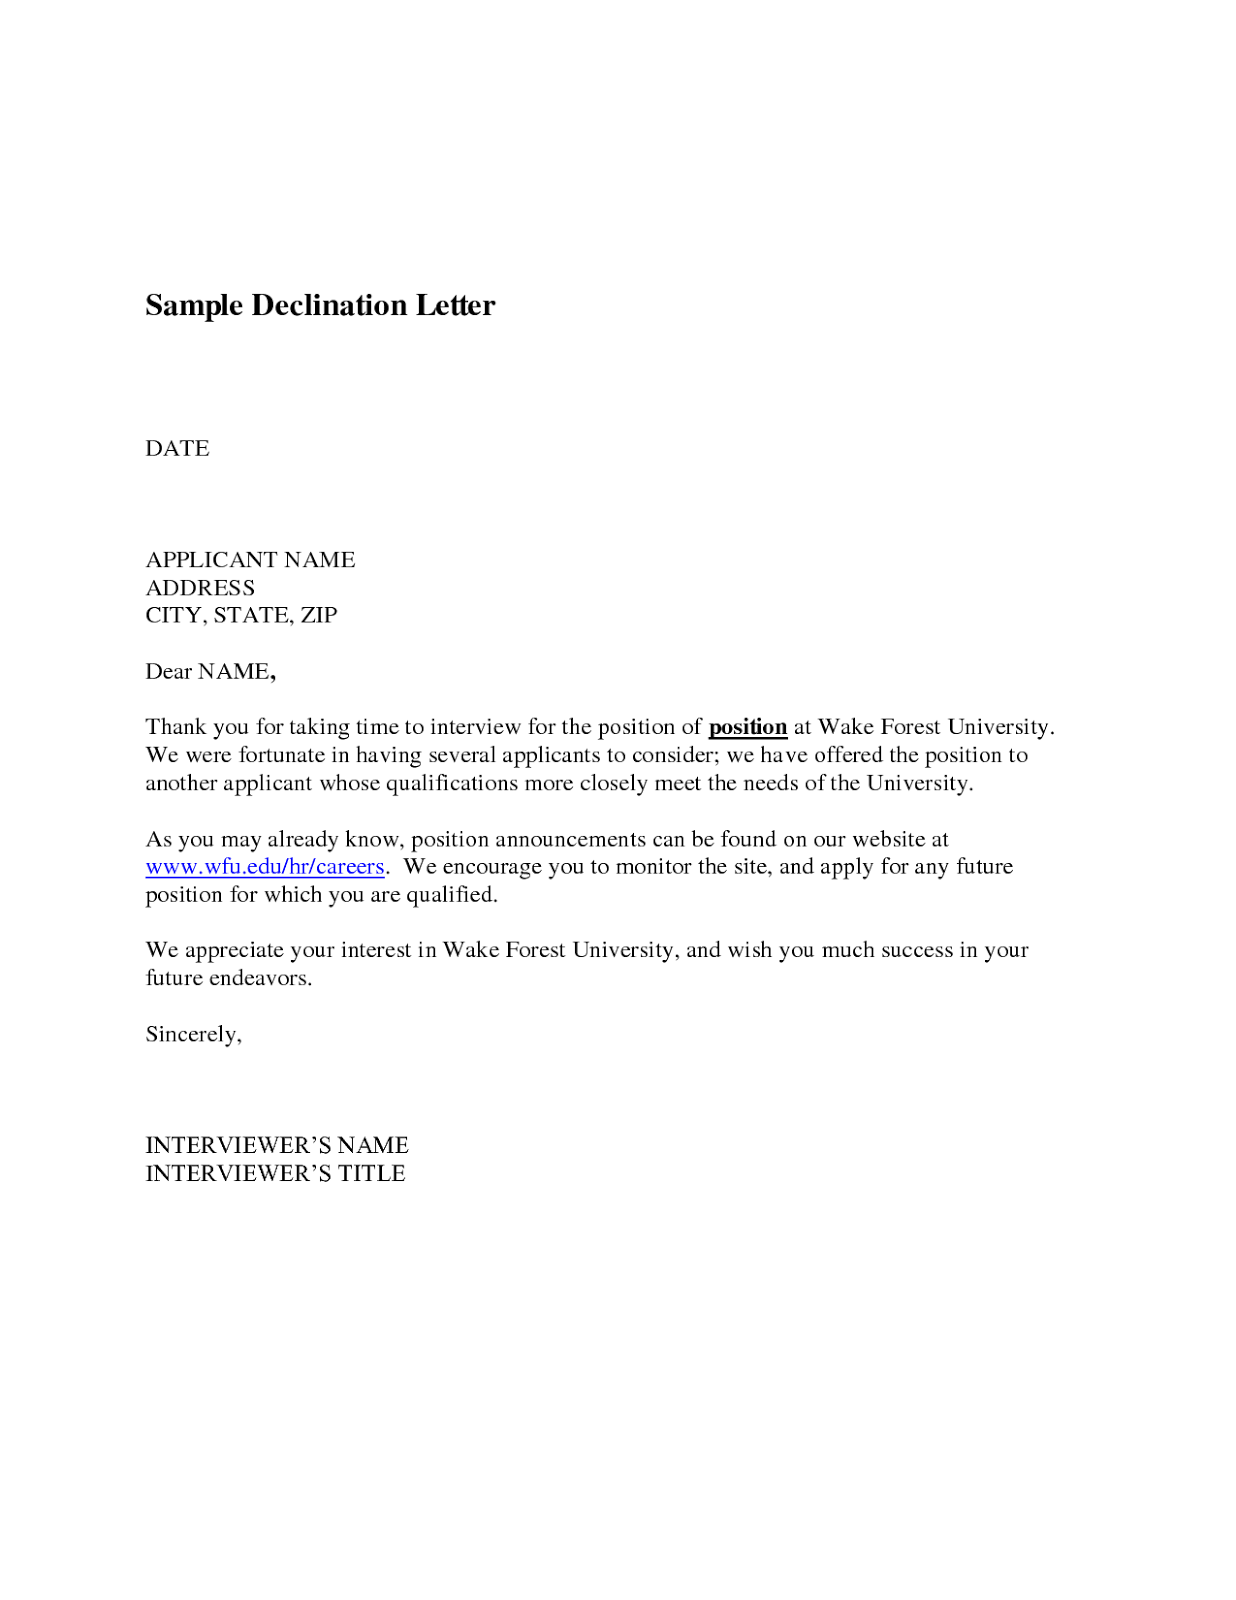 Cover letter for university job sample